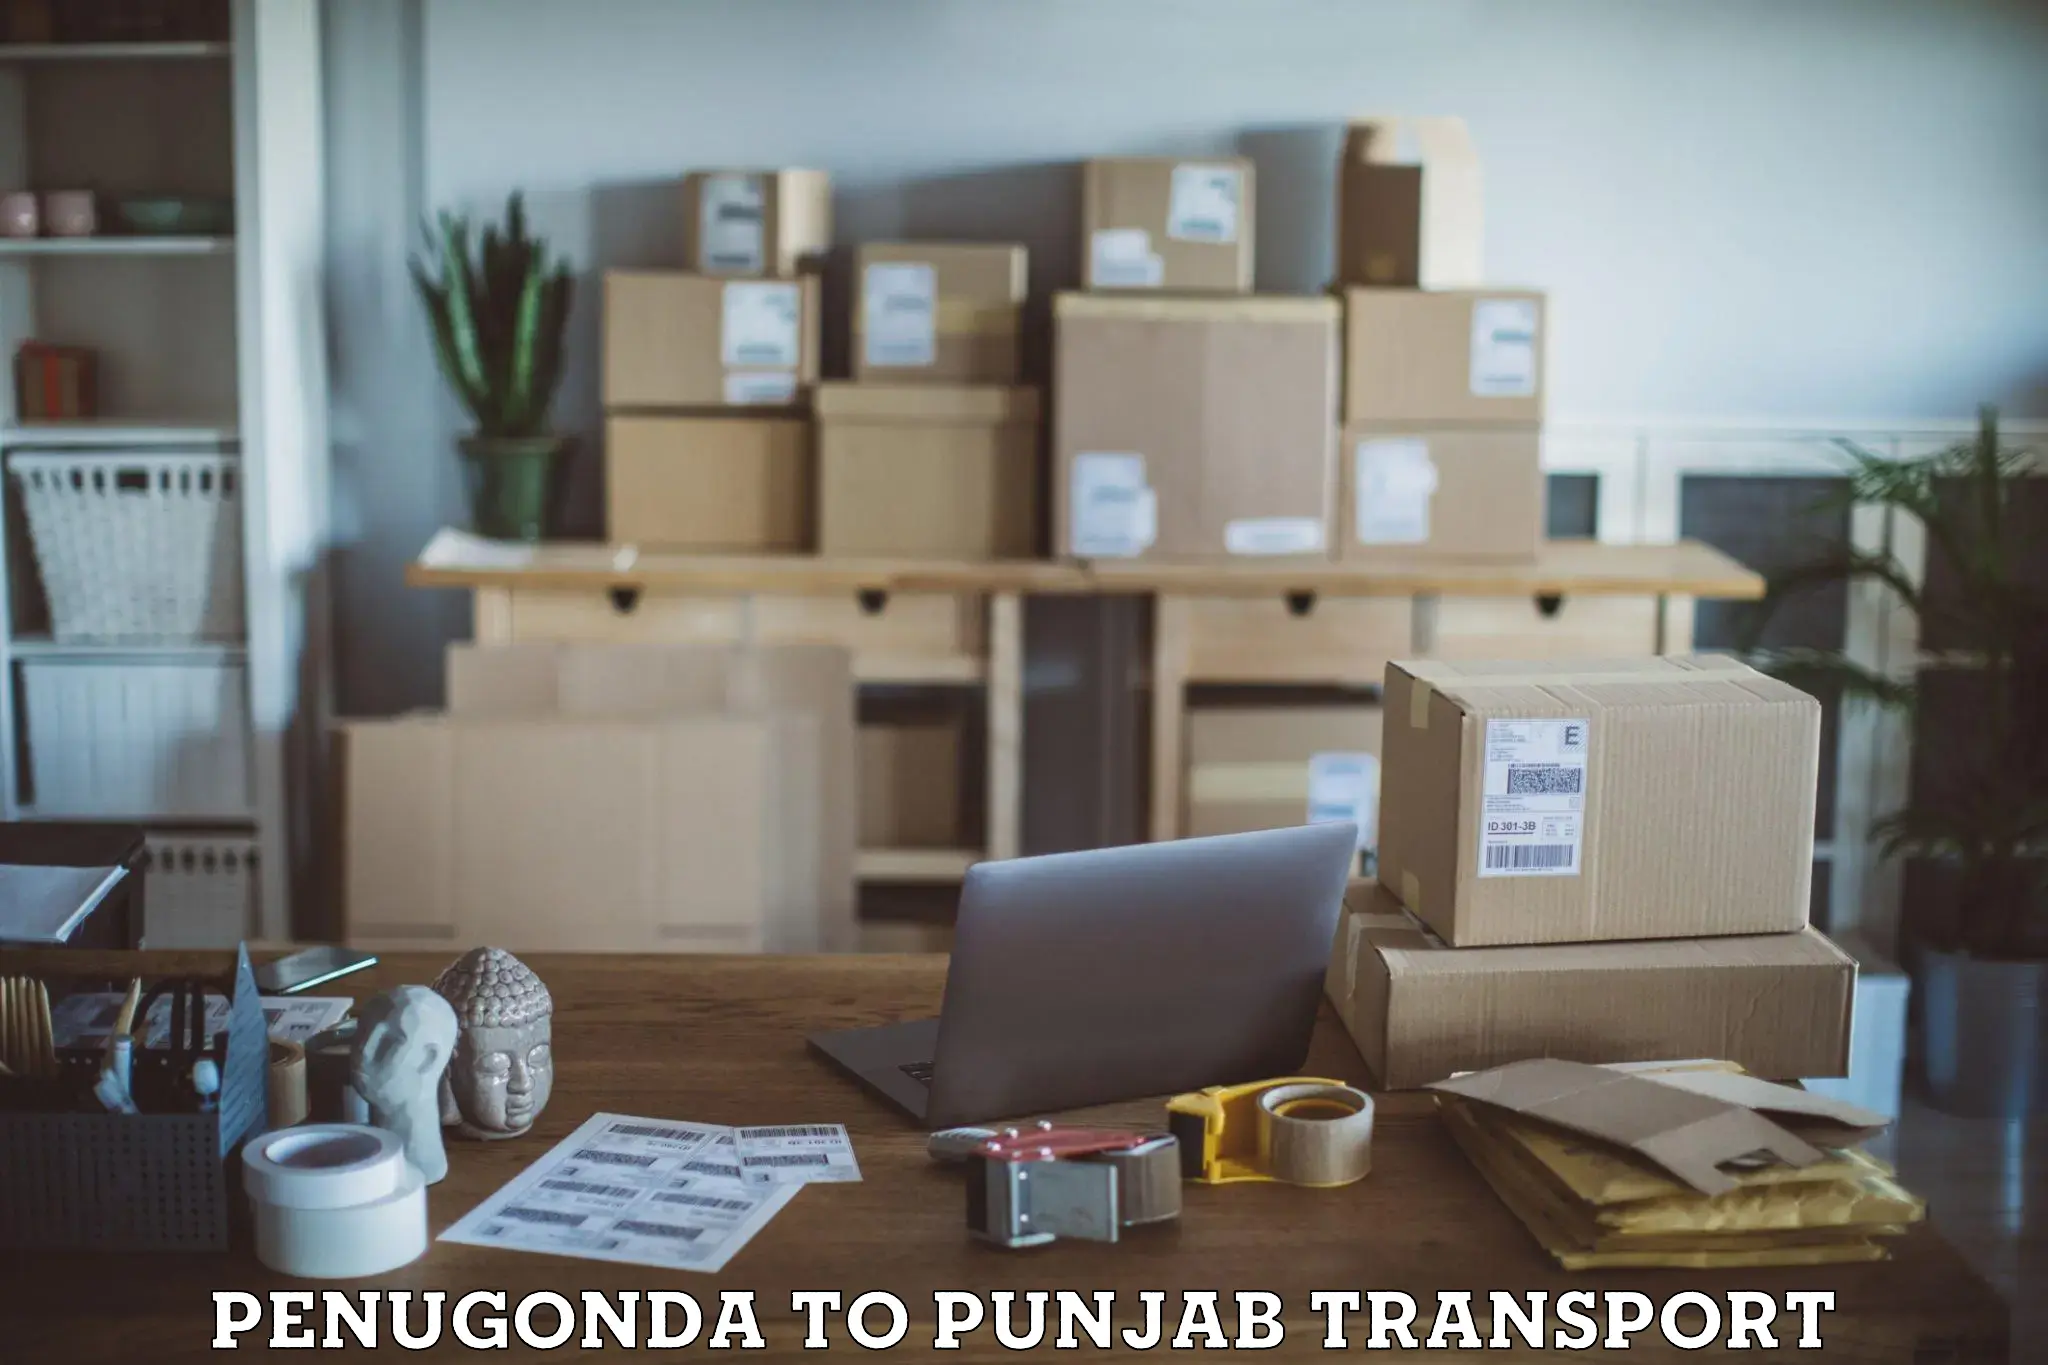 Furniture transport service Penugonda to Punjab